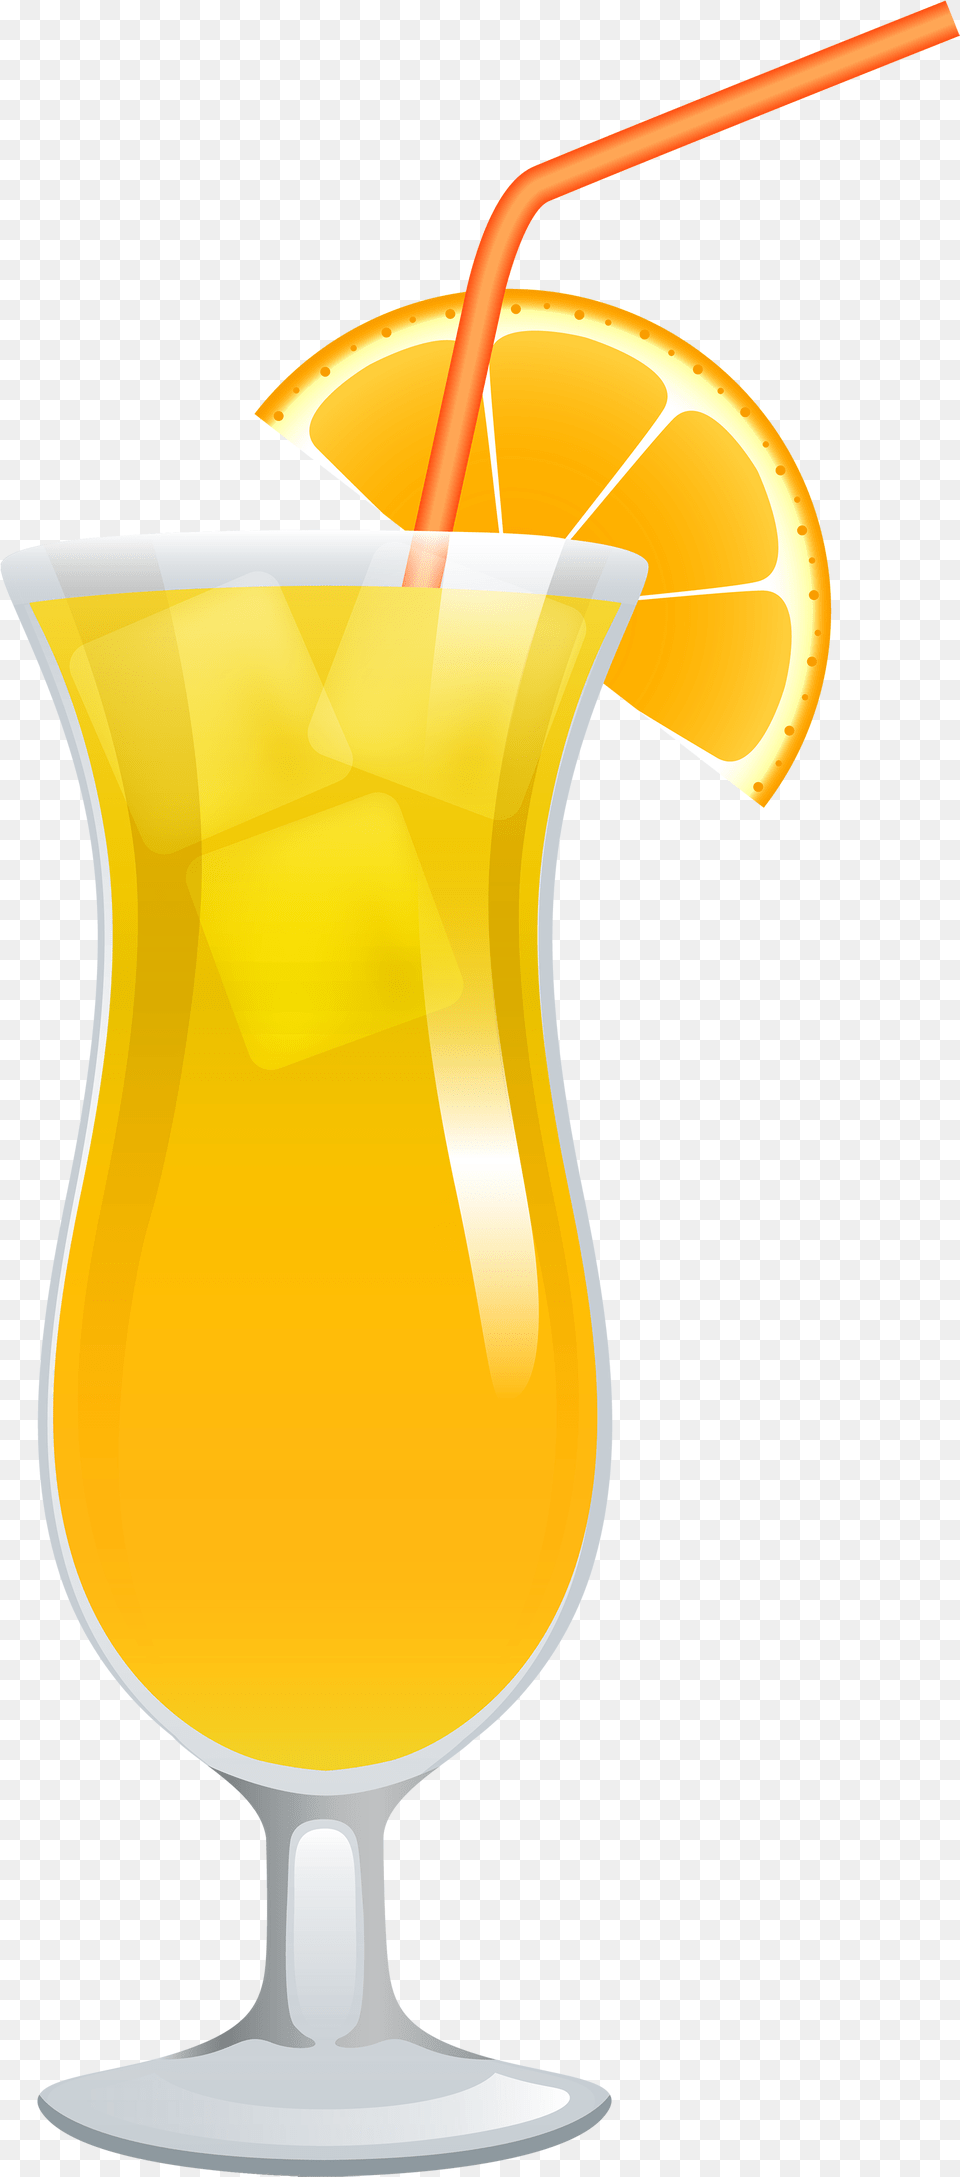 Cocktail Drink Clip Art, Beverage, Juice, Orange Juice, Alcohol Png Image